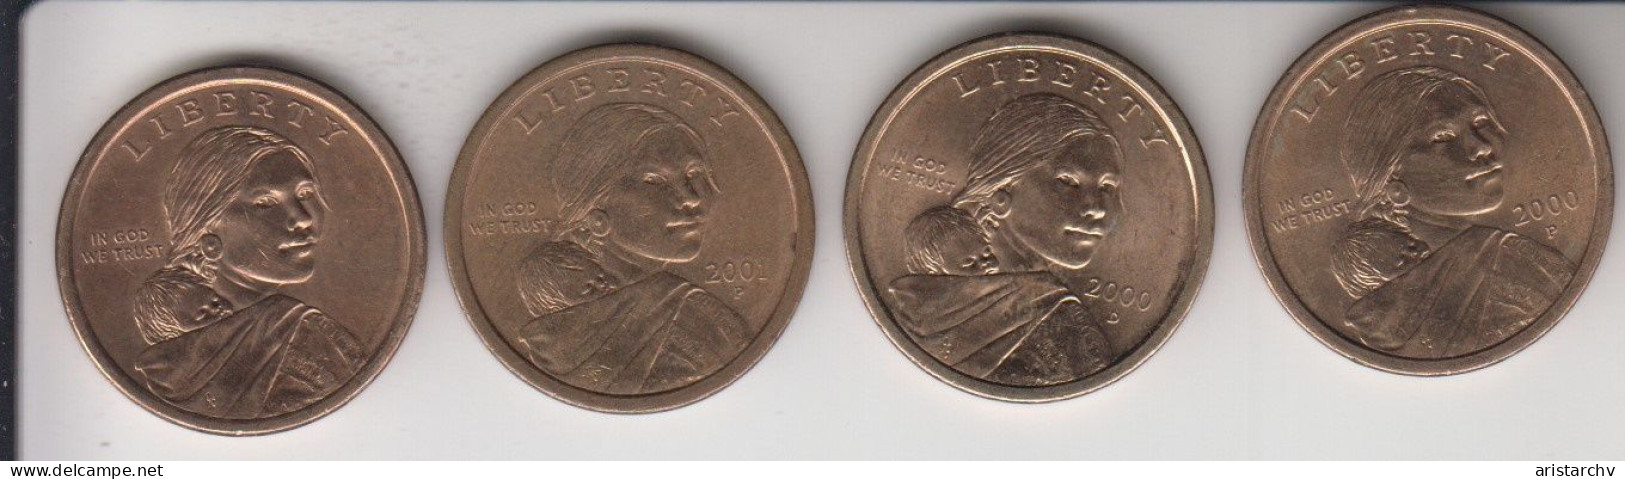 USA 2000 2001 1 $ DOLLAR SACAGAWEA EAGLE 4 DIFFERENT CIRCULATED COINS - 2000-…: Sacagawea